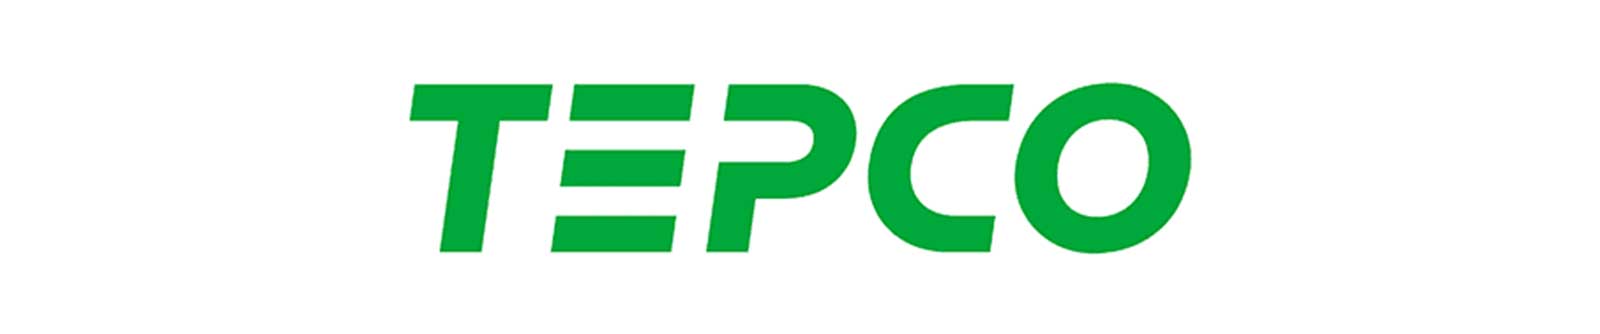 Logo: TEPCO Renewable Power